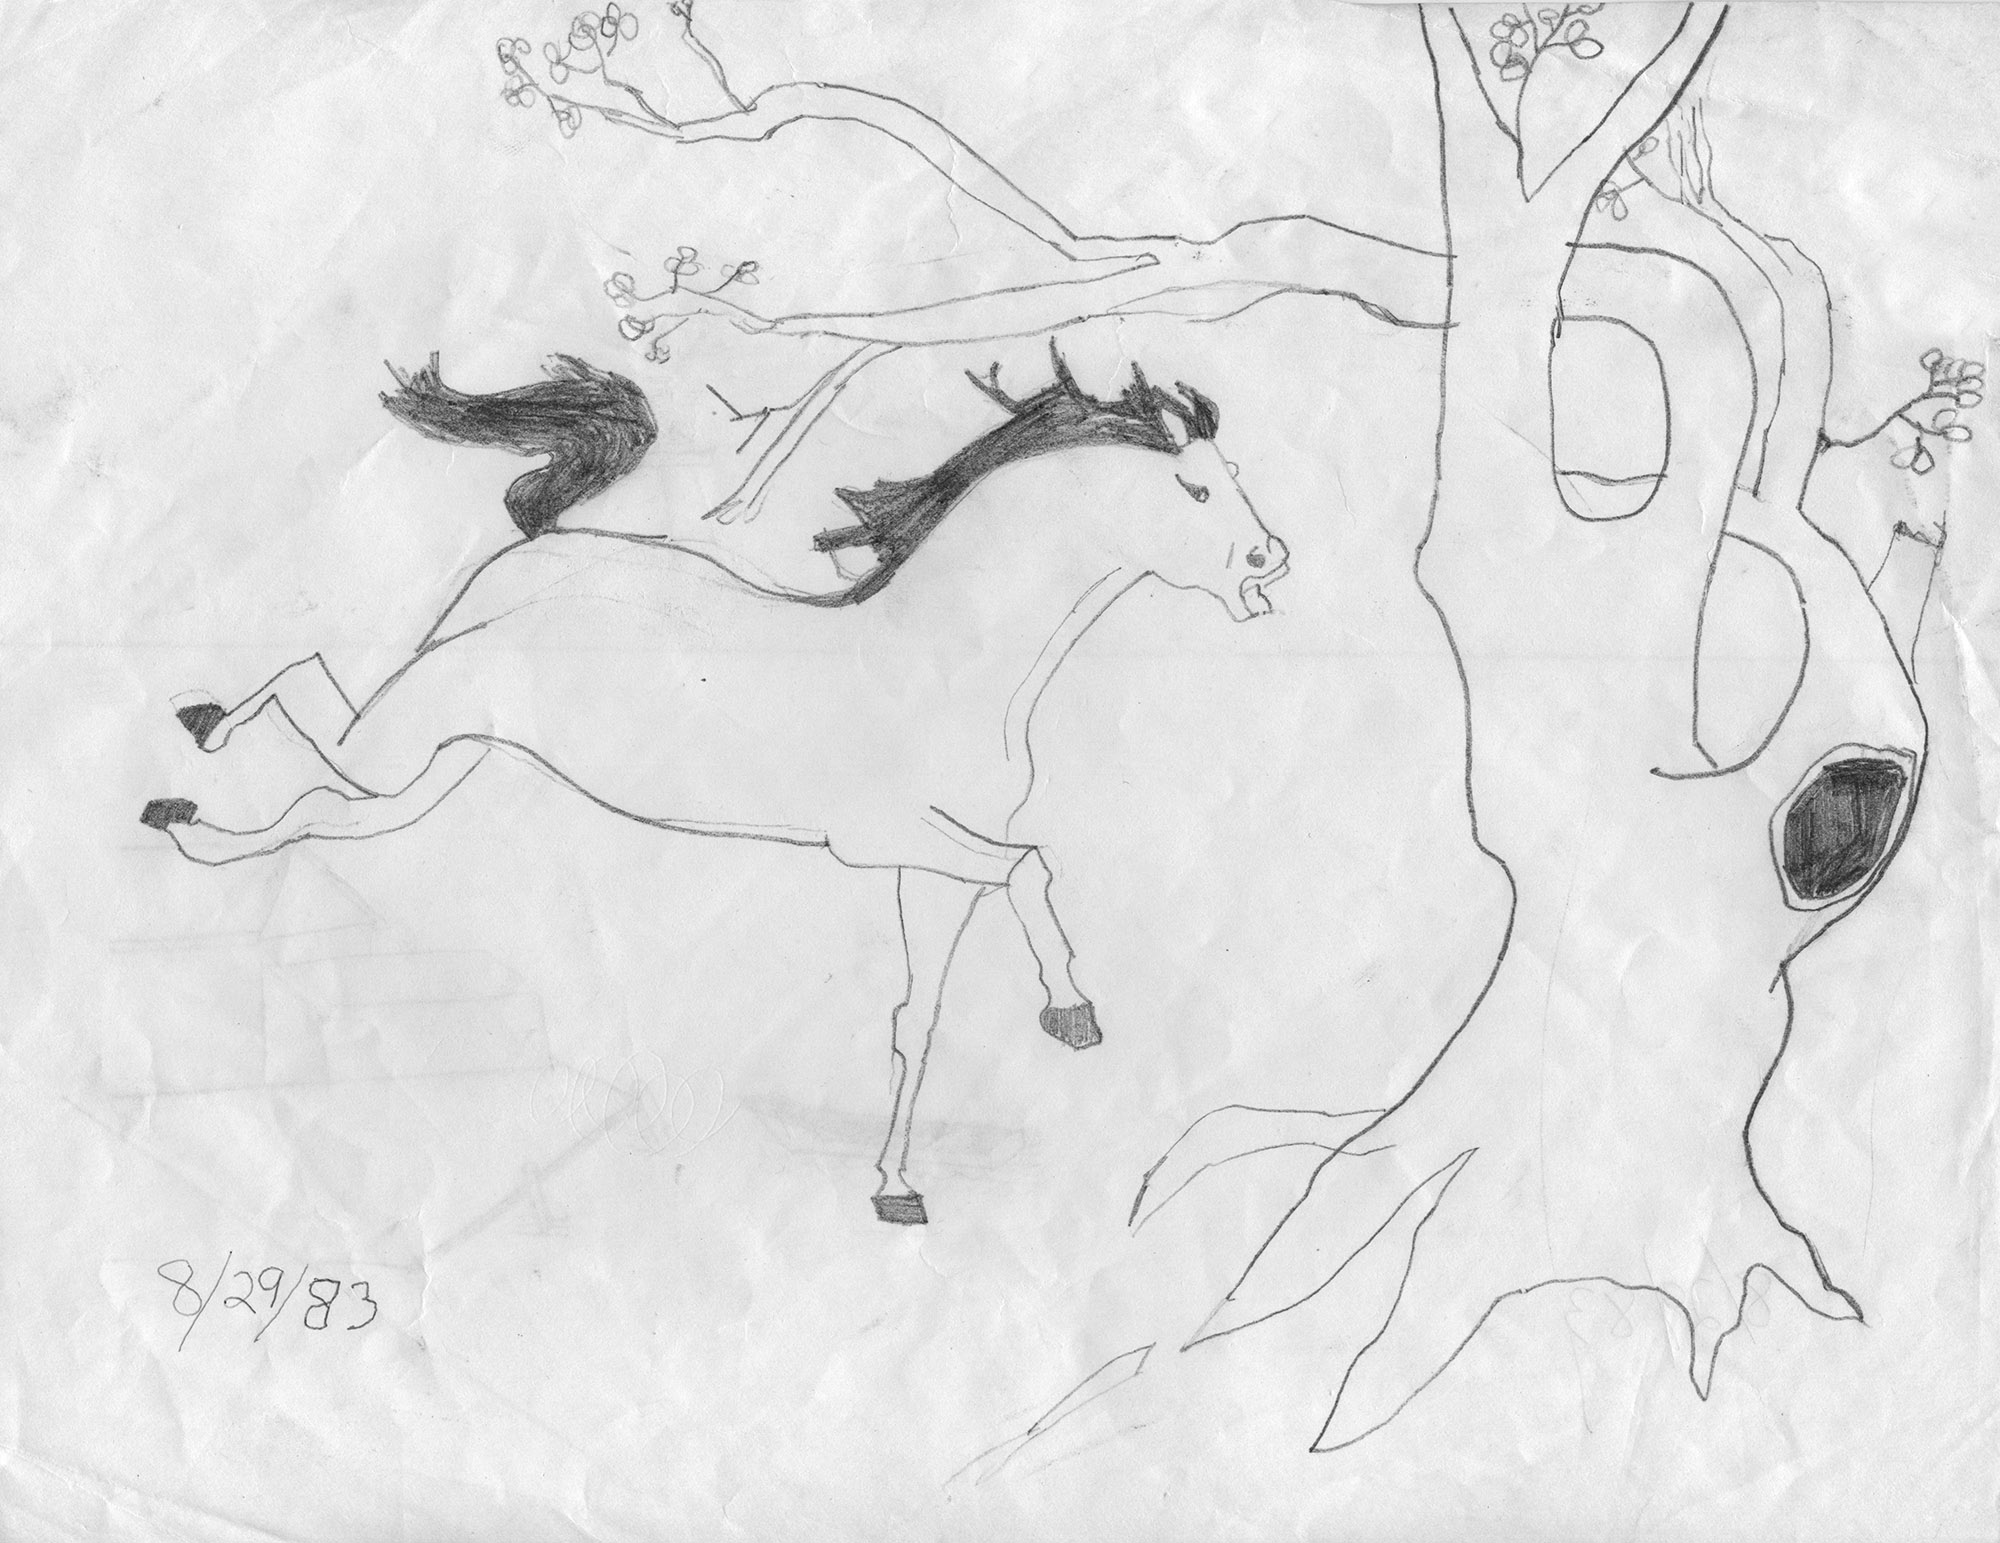 1983_08_29_HORSE_AT_KYLES_8.5x11_sm2k